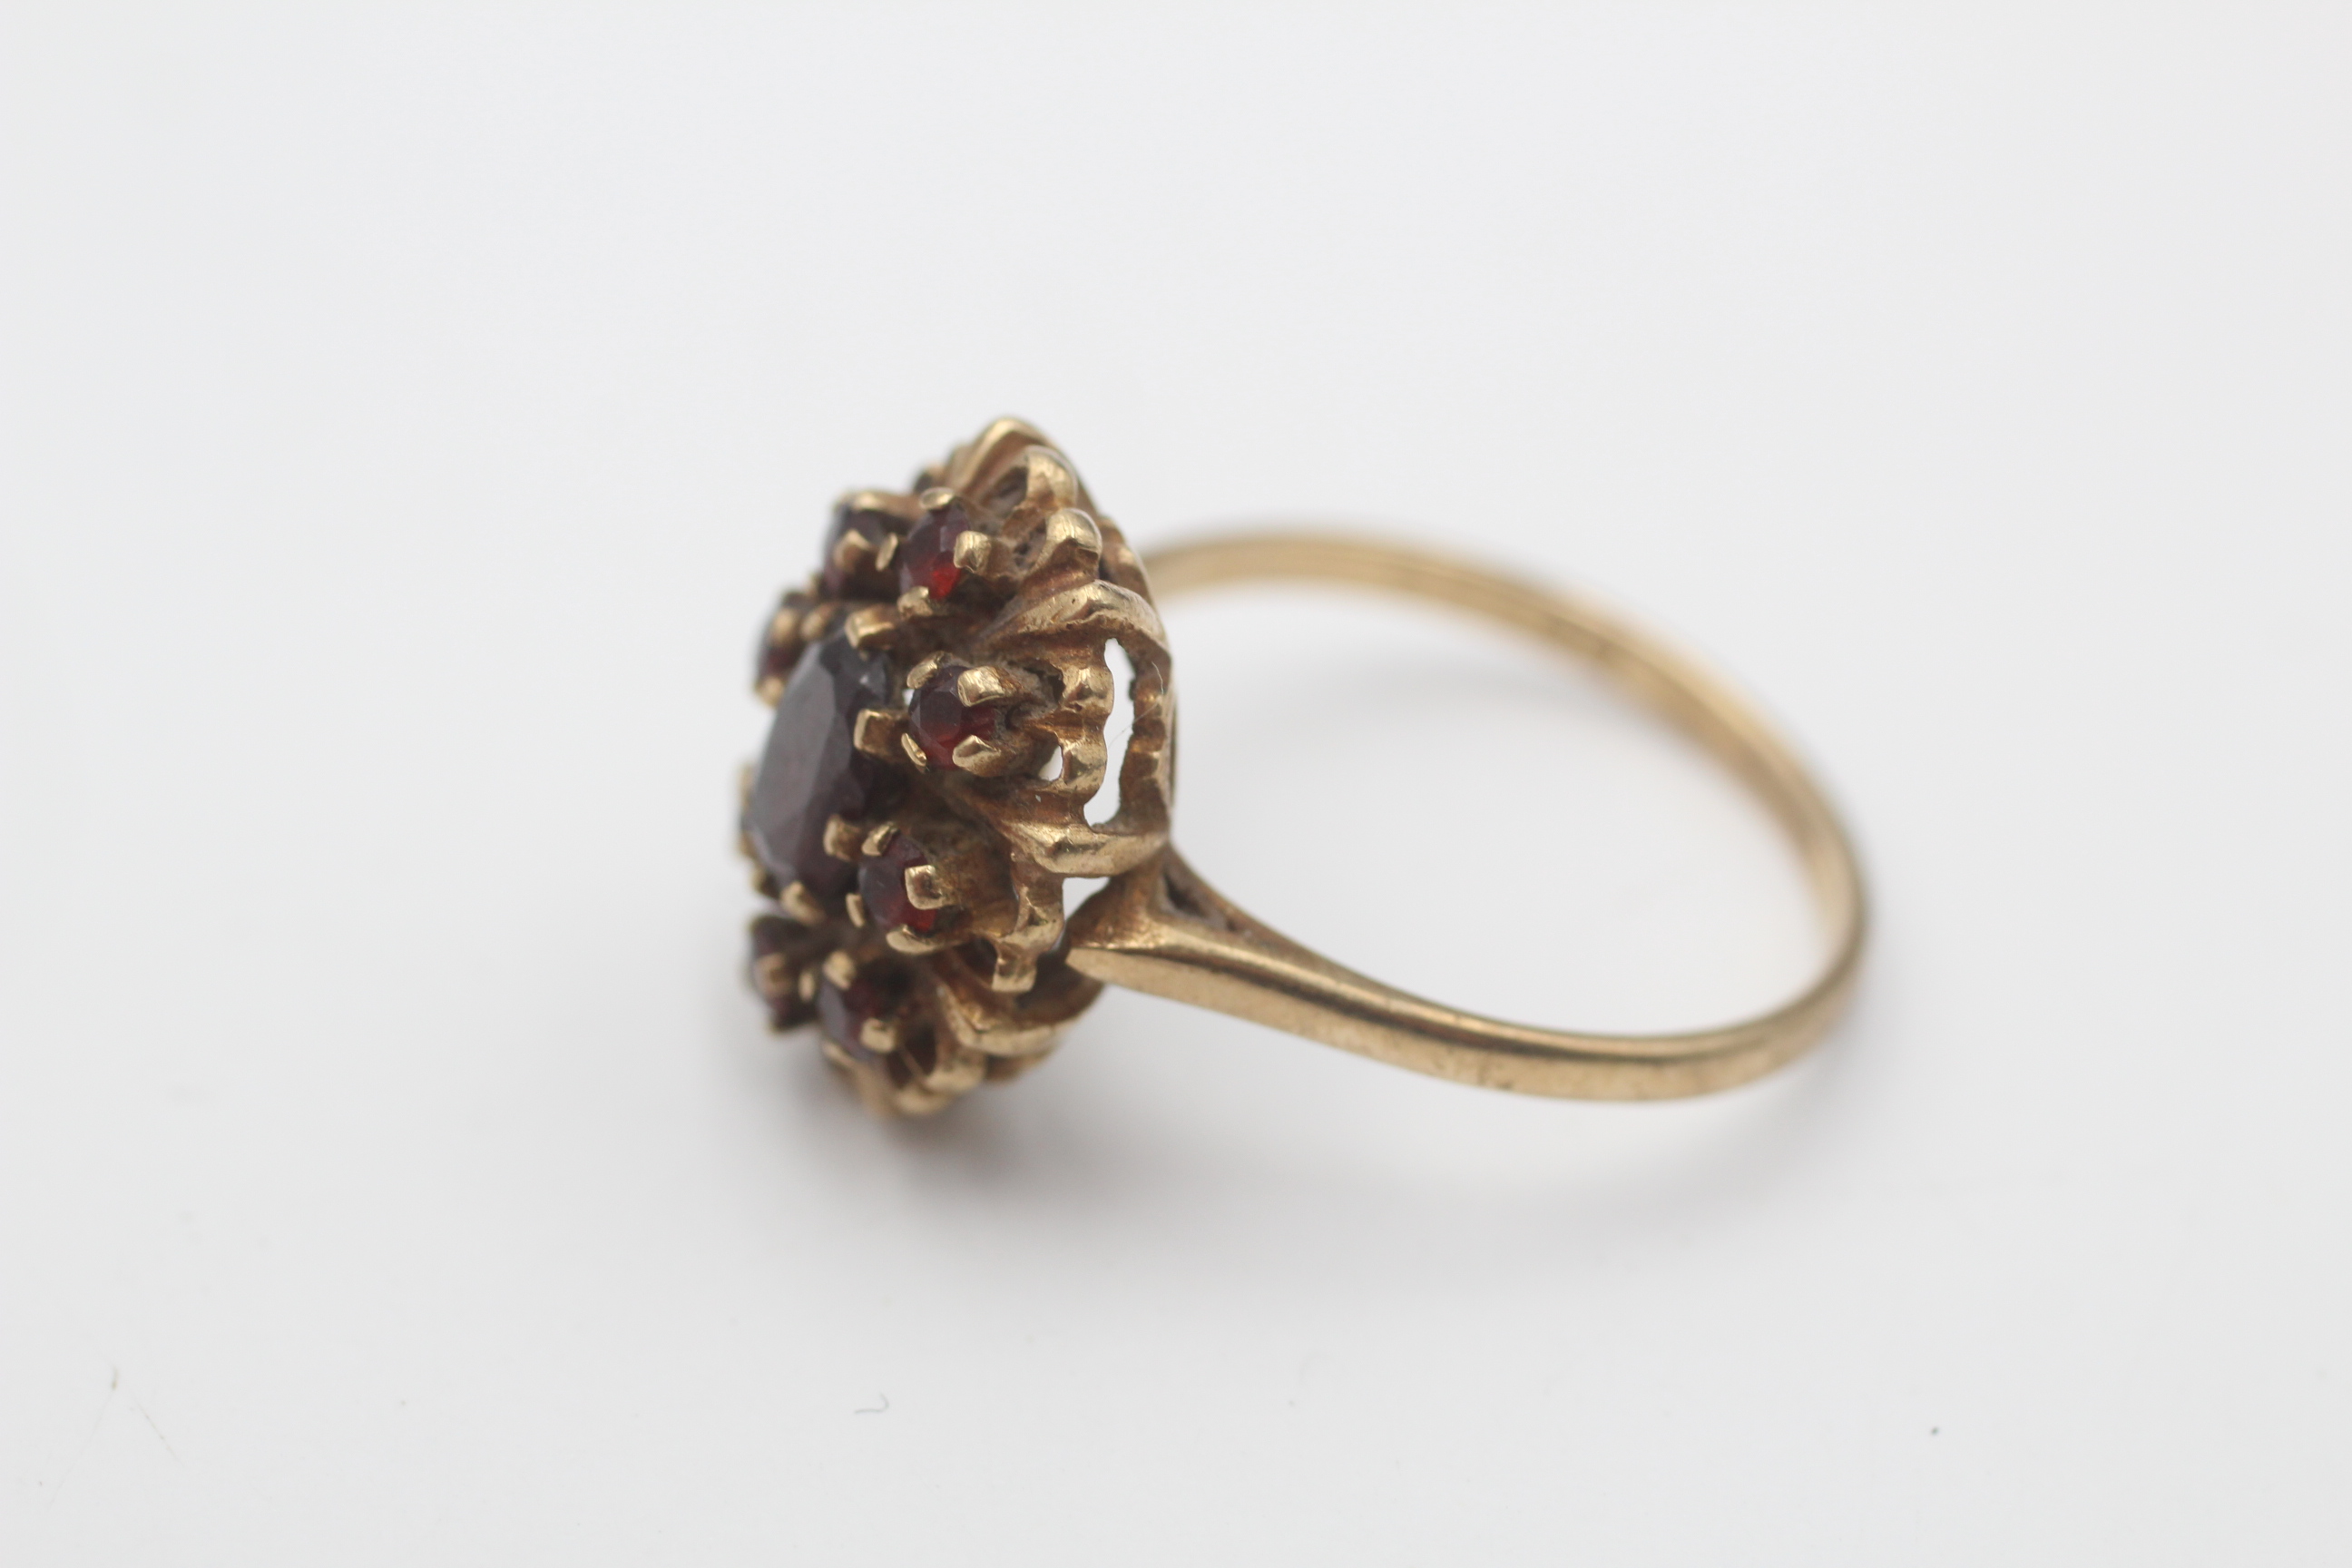 9ct gold vintage garnet halo dress ring (3.7g) - Image 5 of 6